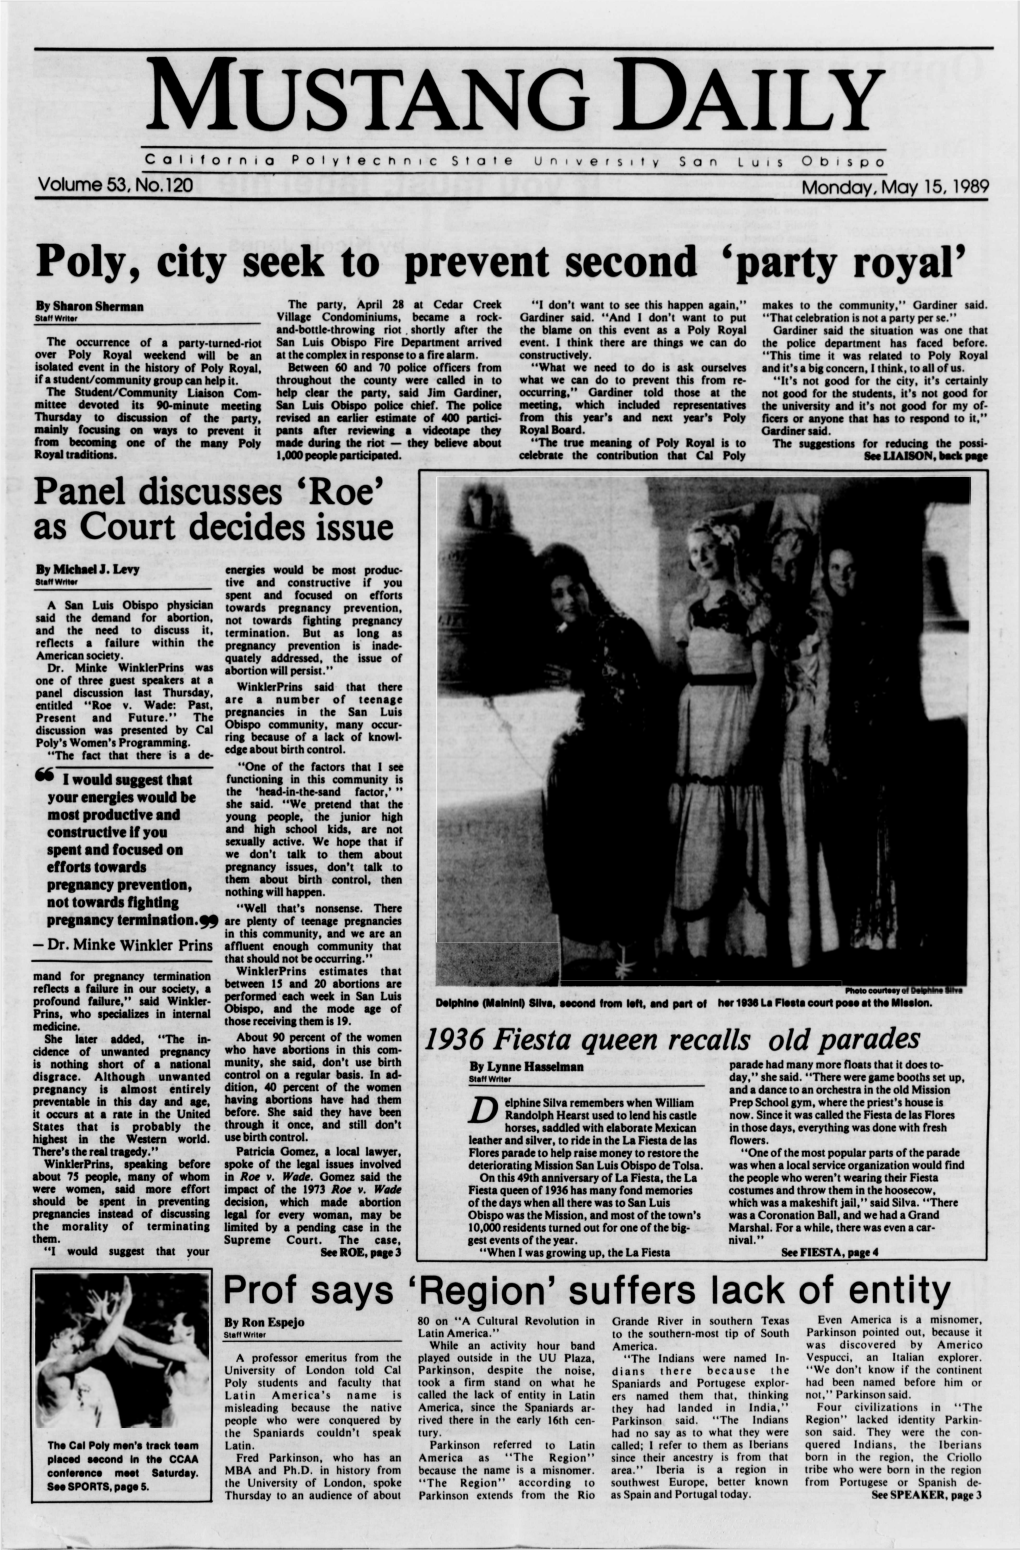 Mustang Daily, May 15, 1989